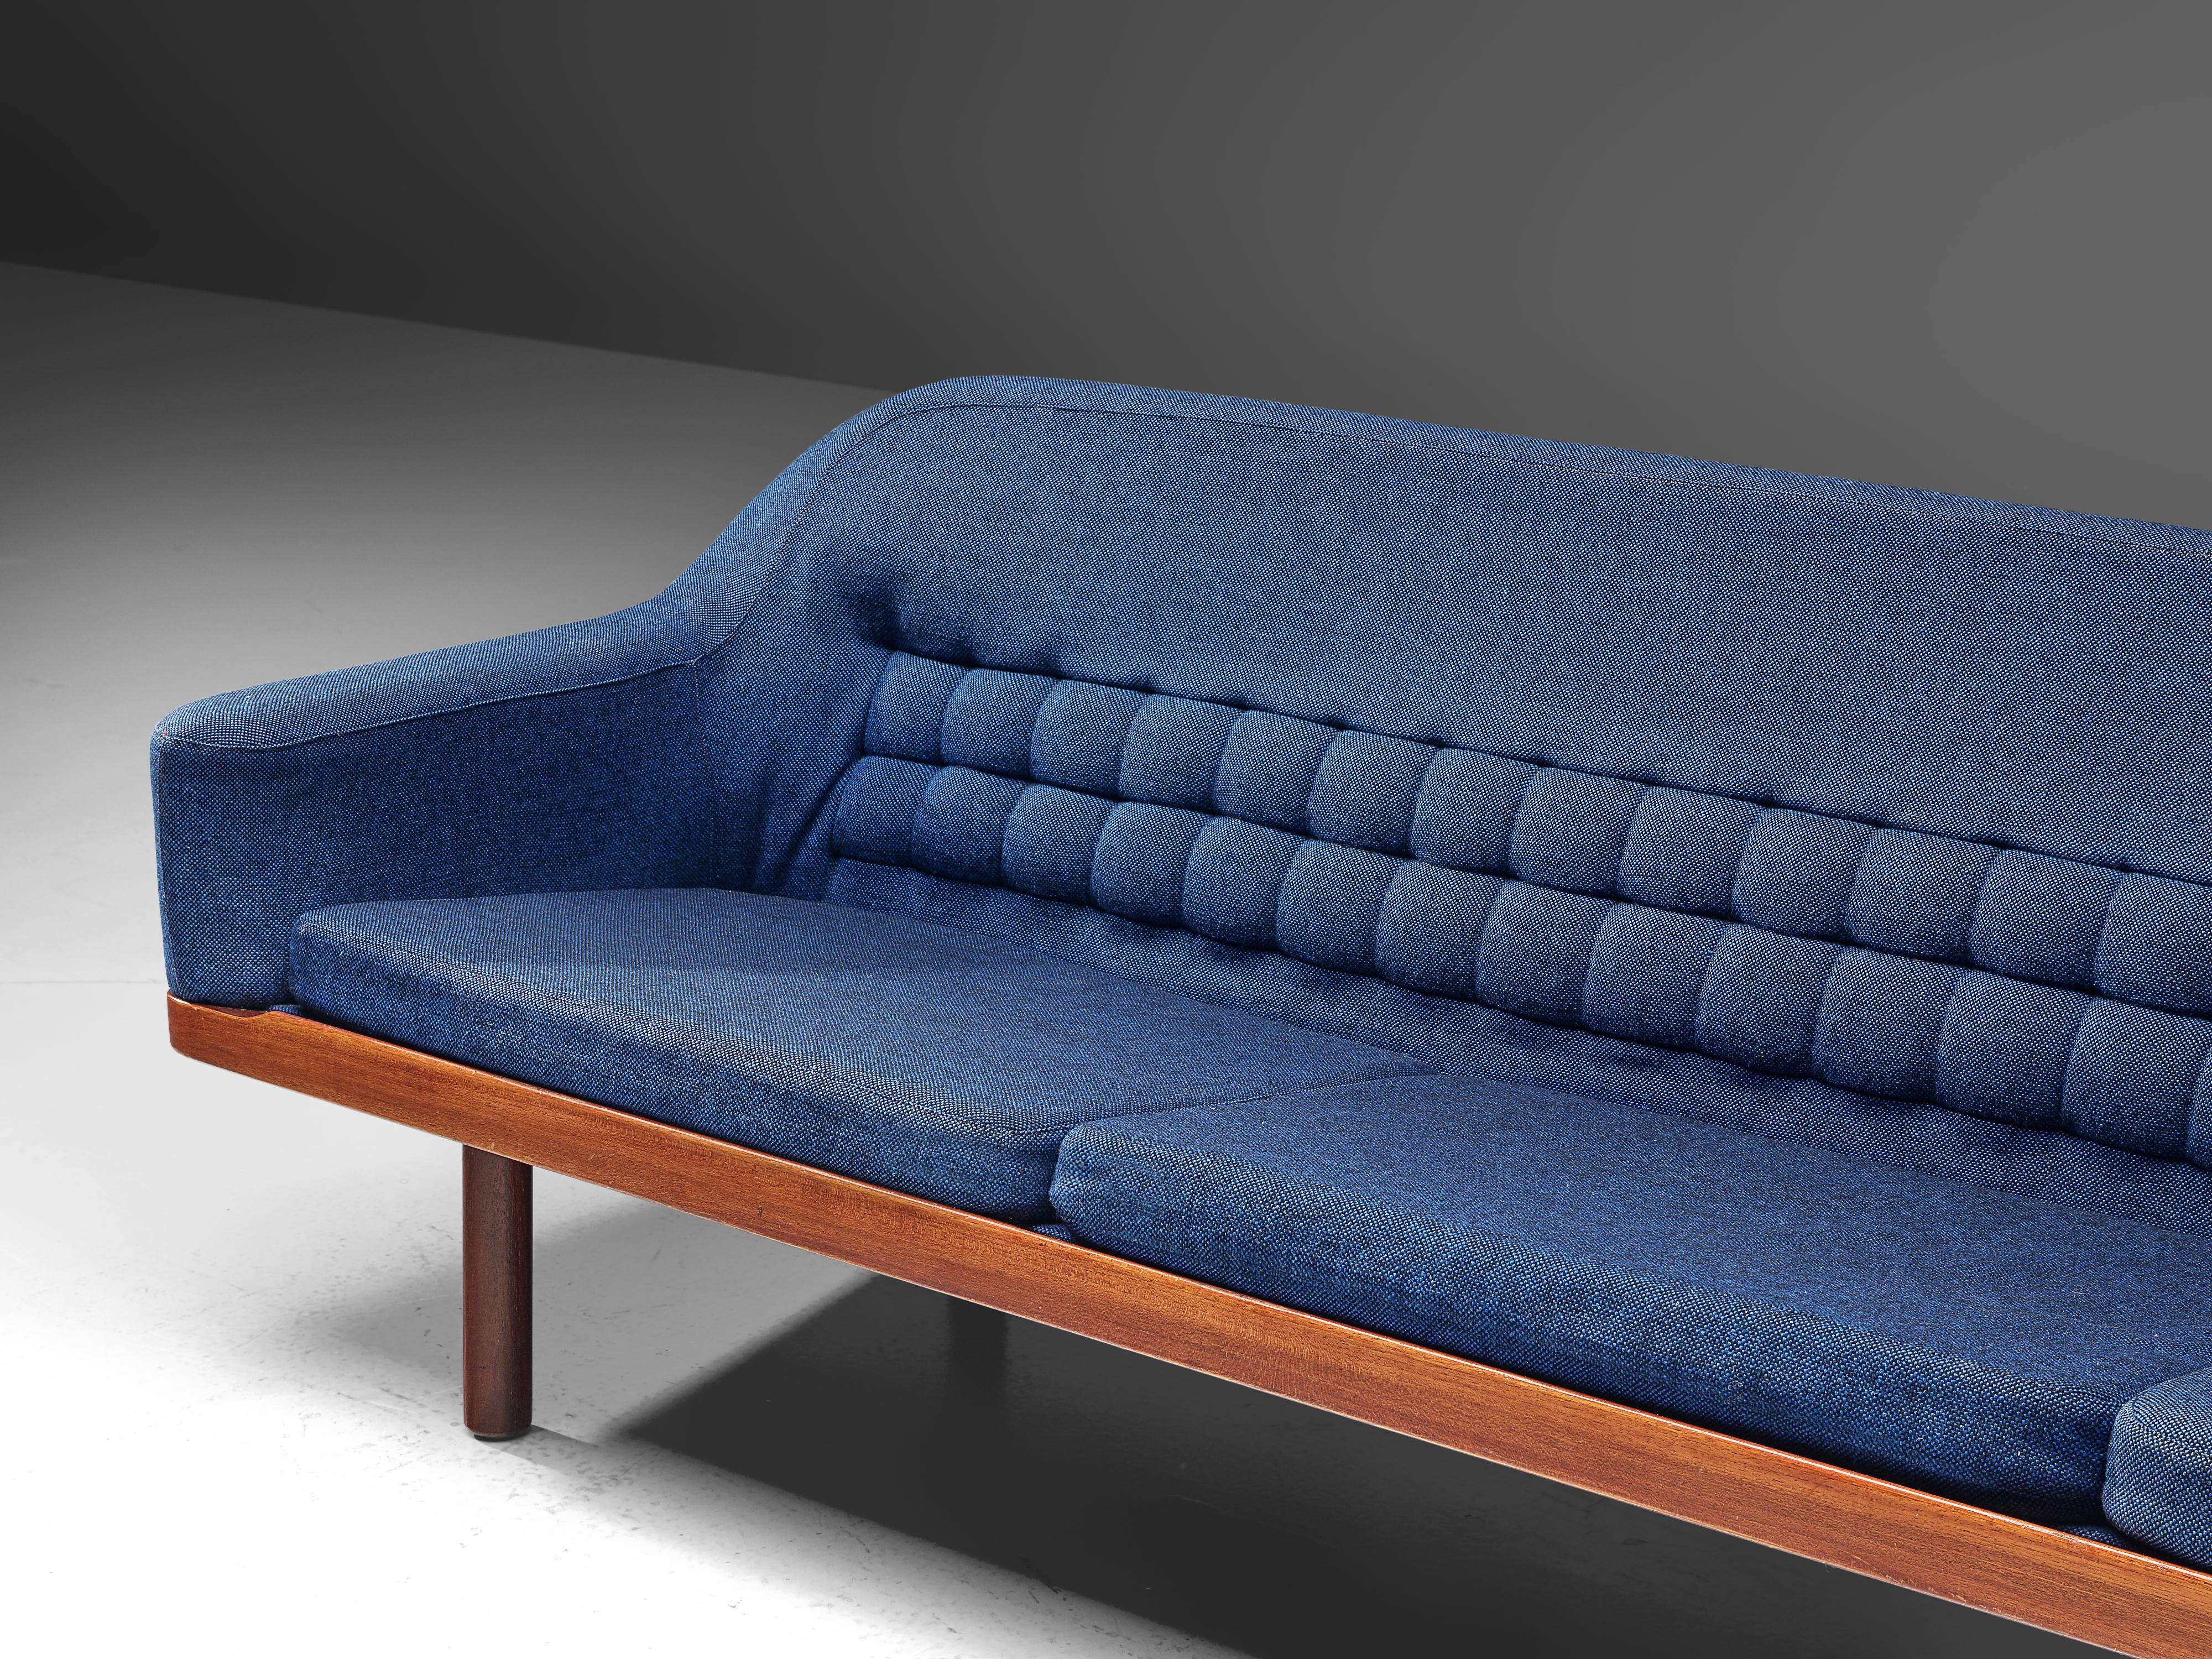 Mid-Century Modern Arne Halvorsen Sofa Model 2010 in Teak and Blue Fabric Upholstery